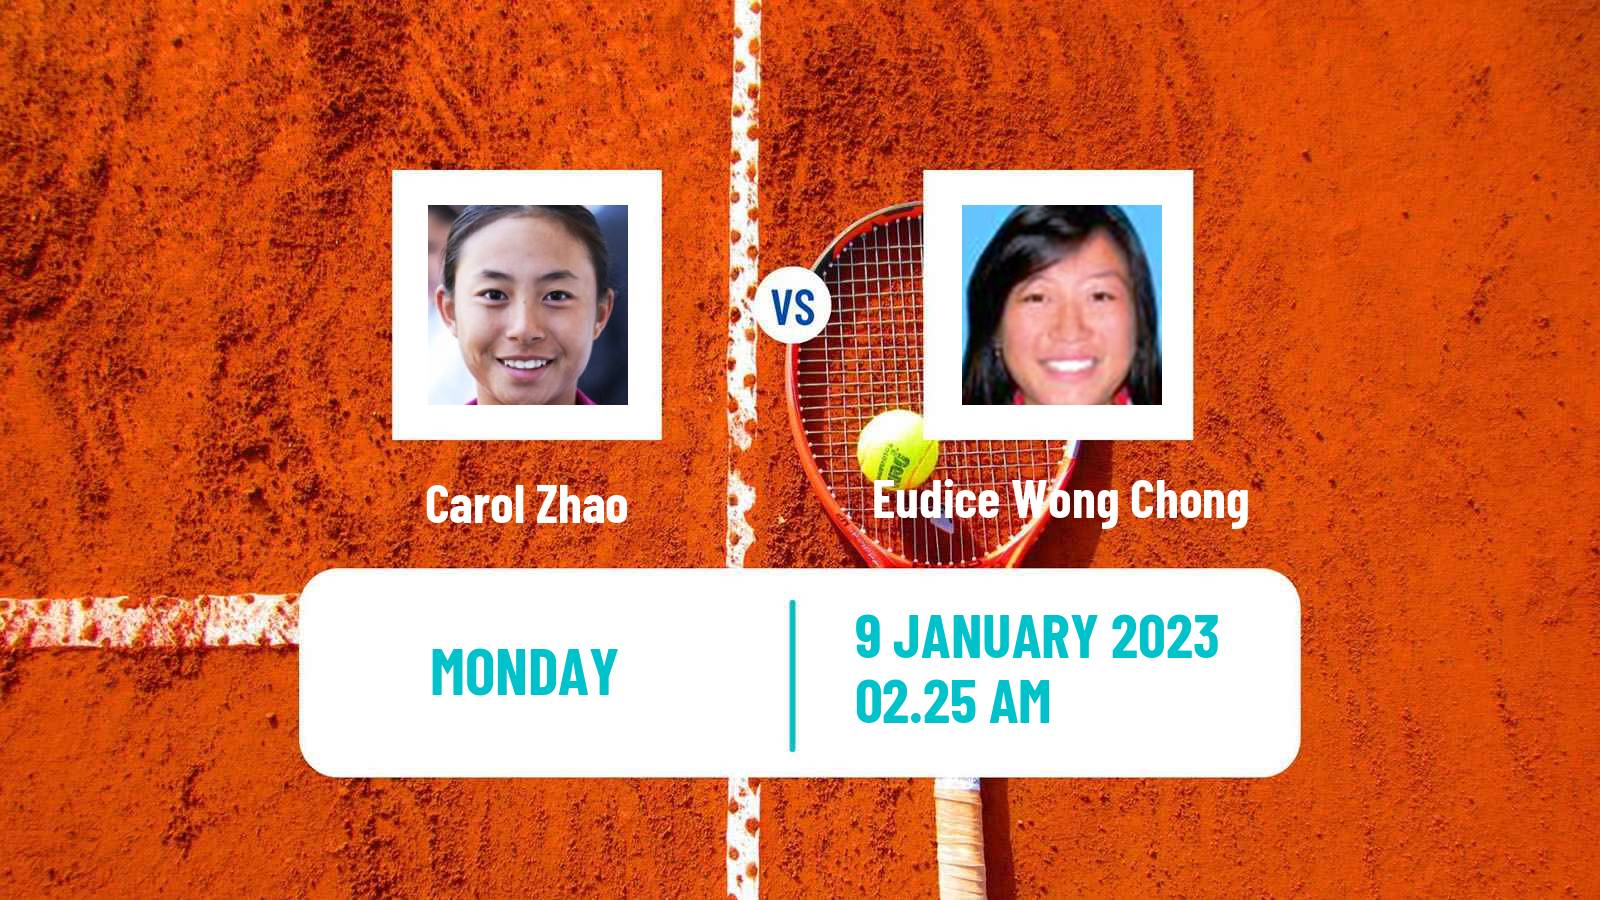 Tennis WTA Australian Open Carol Zhao - Eudice Wong Chong